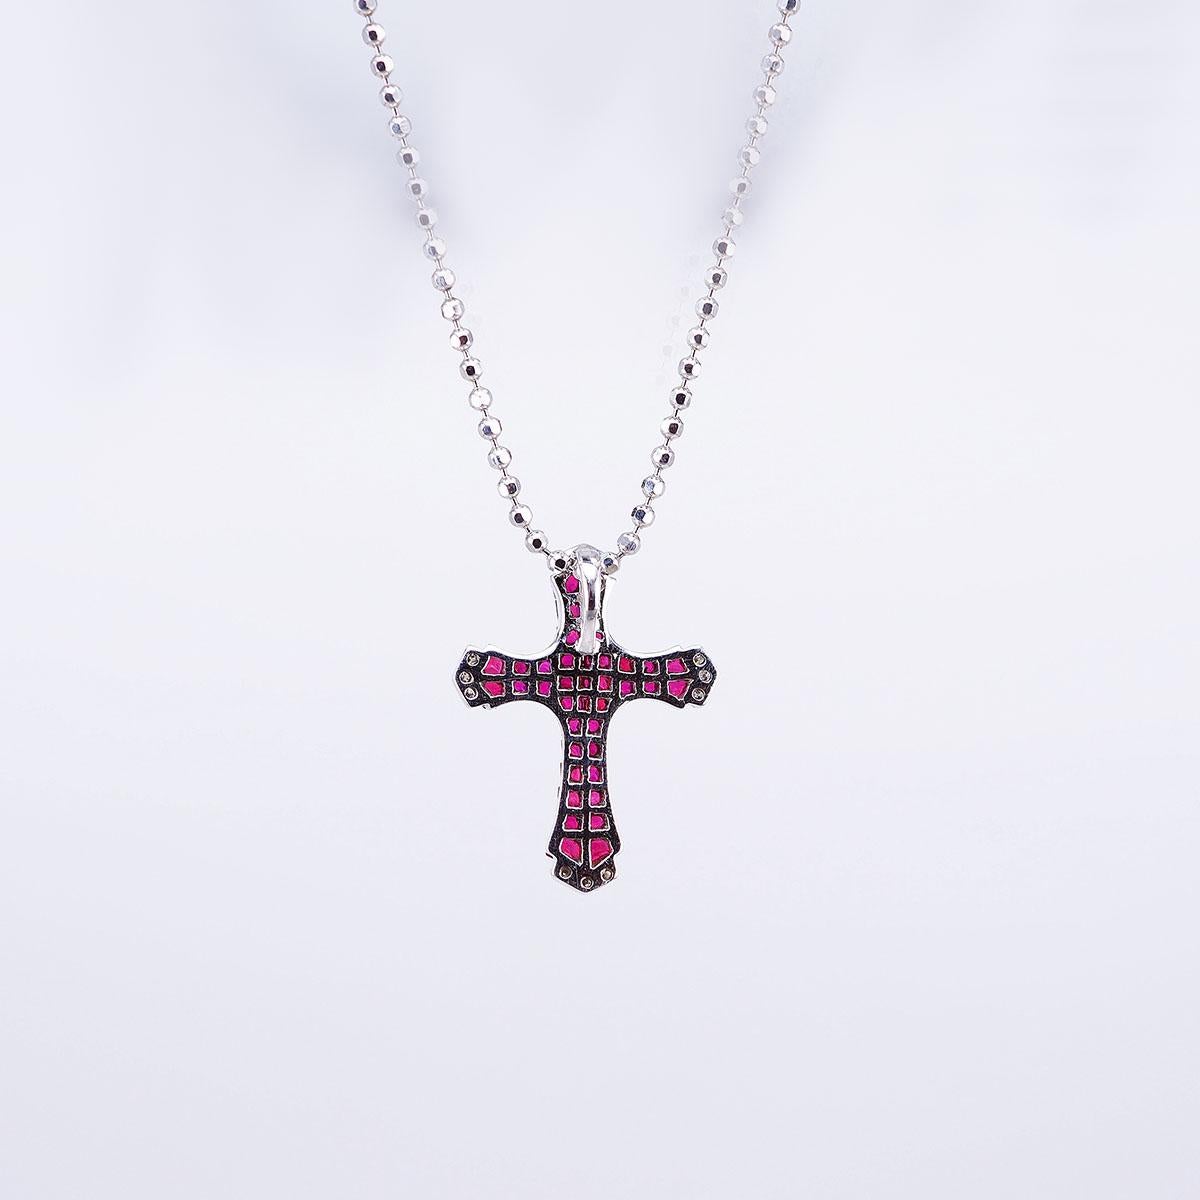 Nous avons conçu un très joli pendentif en forme de croix  nous coupons et rainurons toutes les pierres. Ce pendentif est d'un style très agréable que vous pouvez utiliser dans de nombreuses occasions en journée et en soirée pour les fêtes.  Rubis